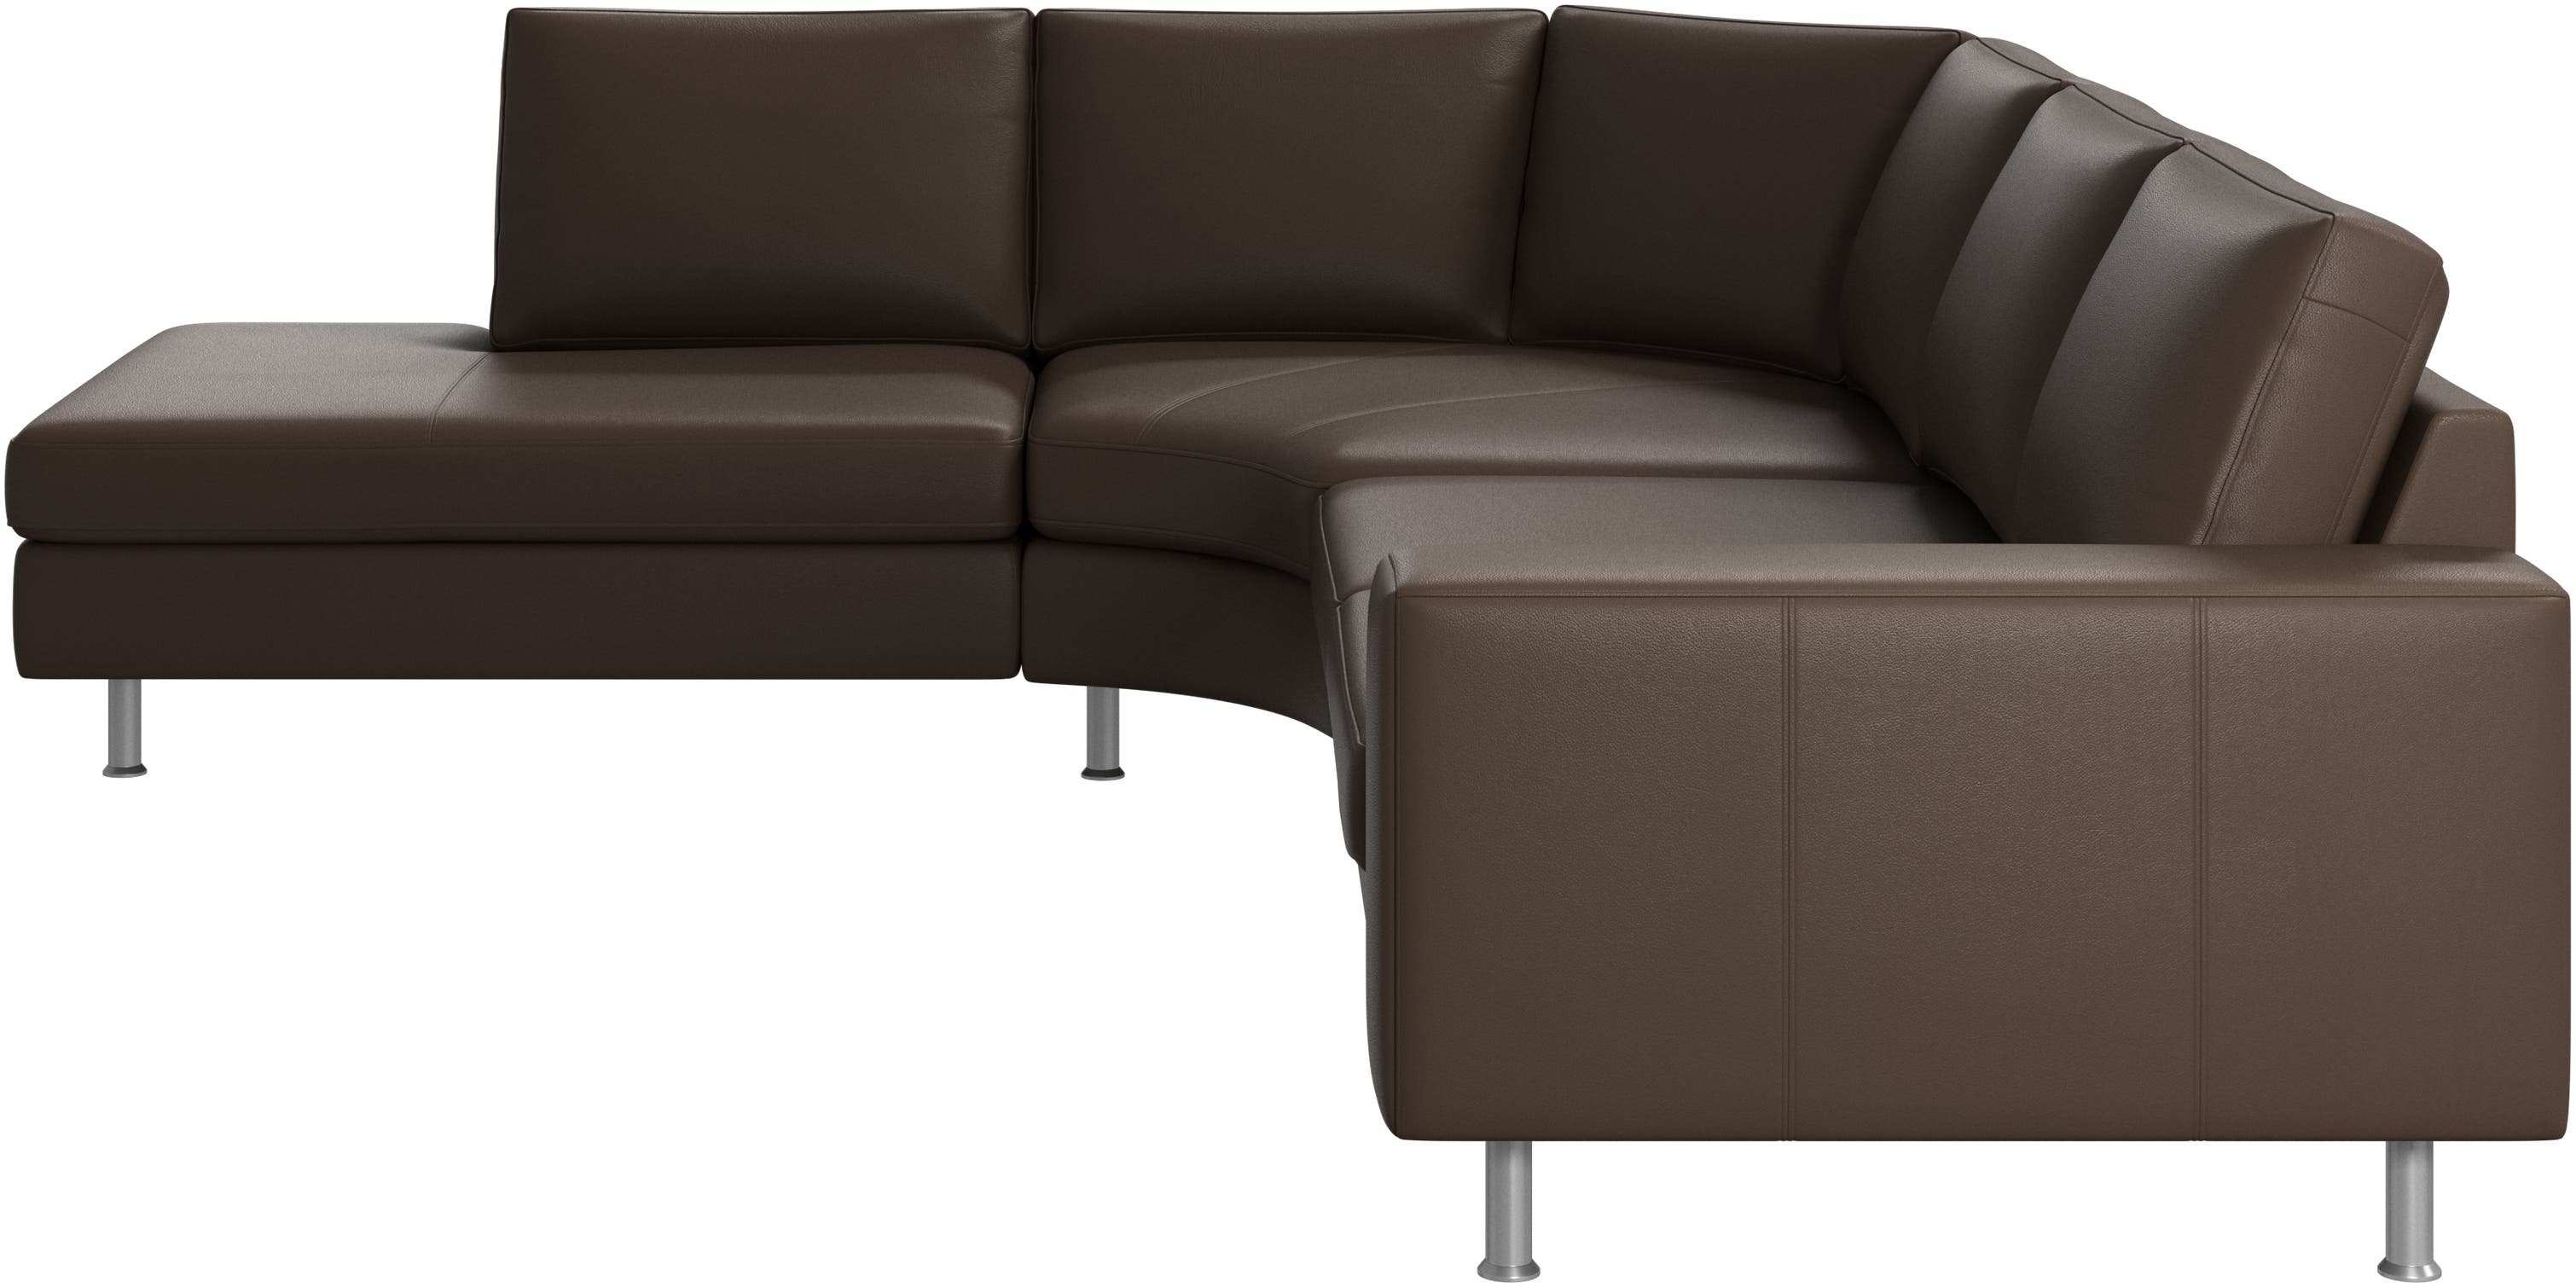 Indivi sofa med rund hvilemodul